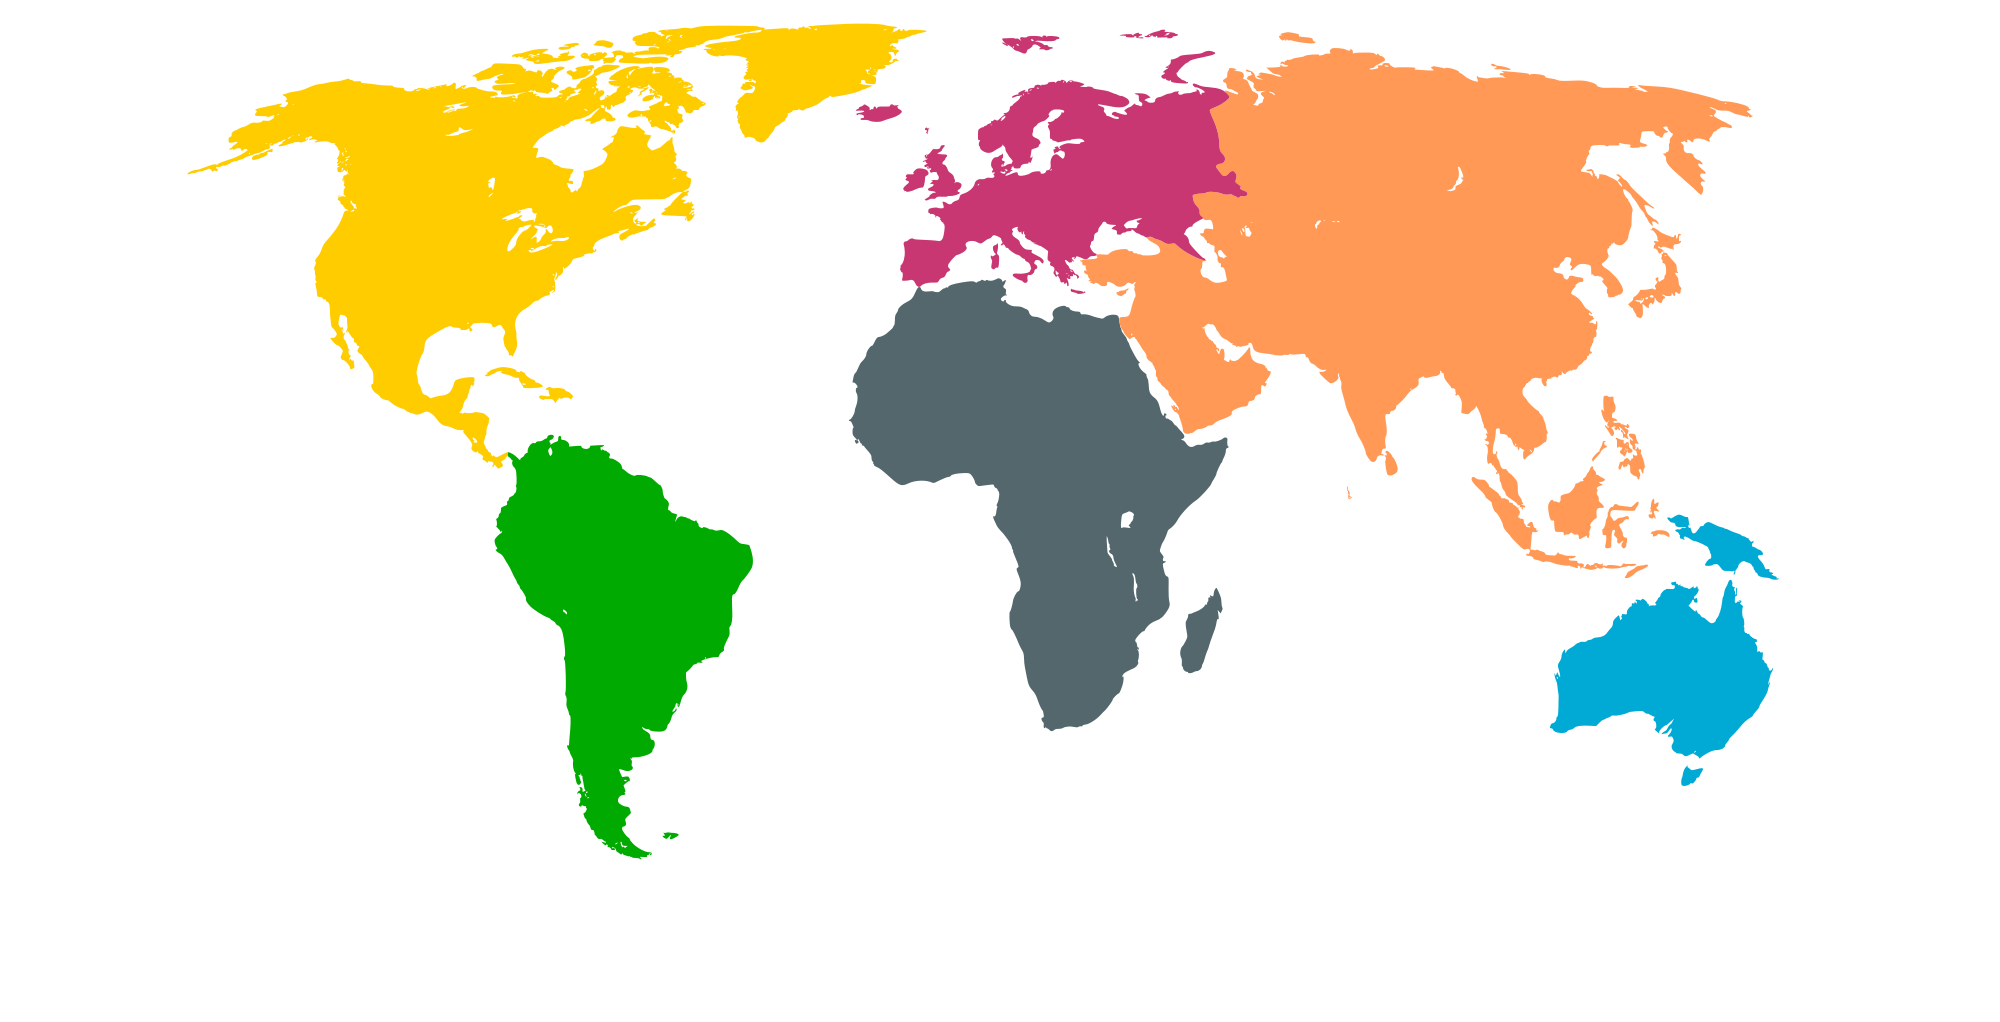 [Word] Châu lục và các vùng lãnh thổ (Continents & Regions)